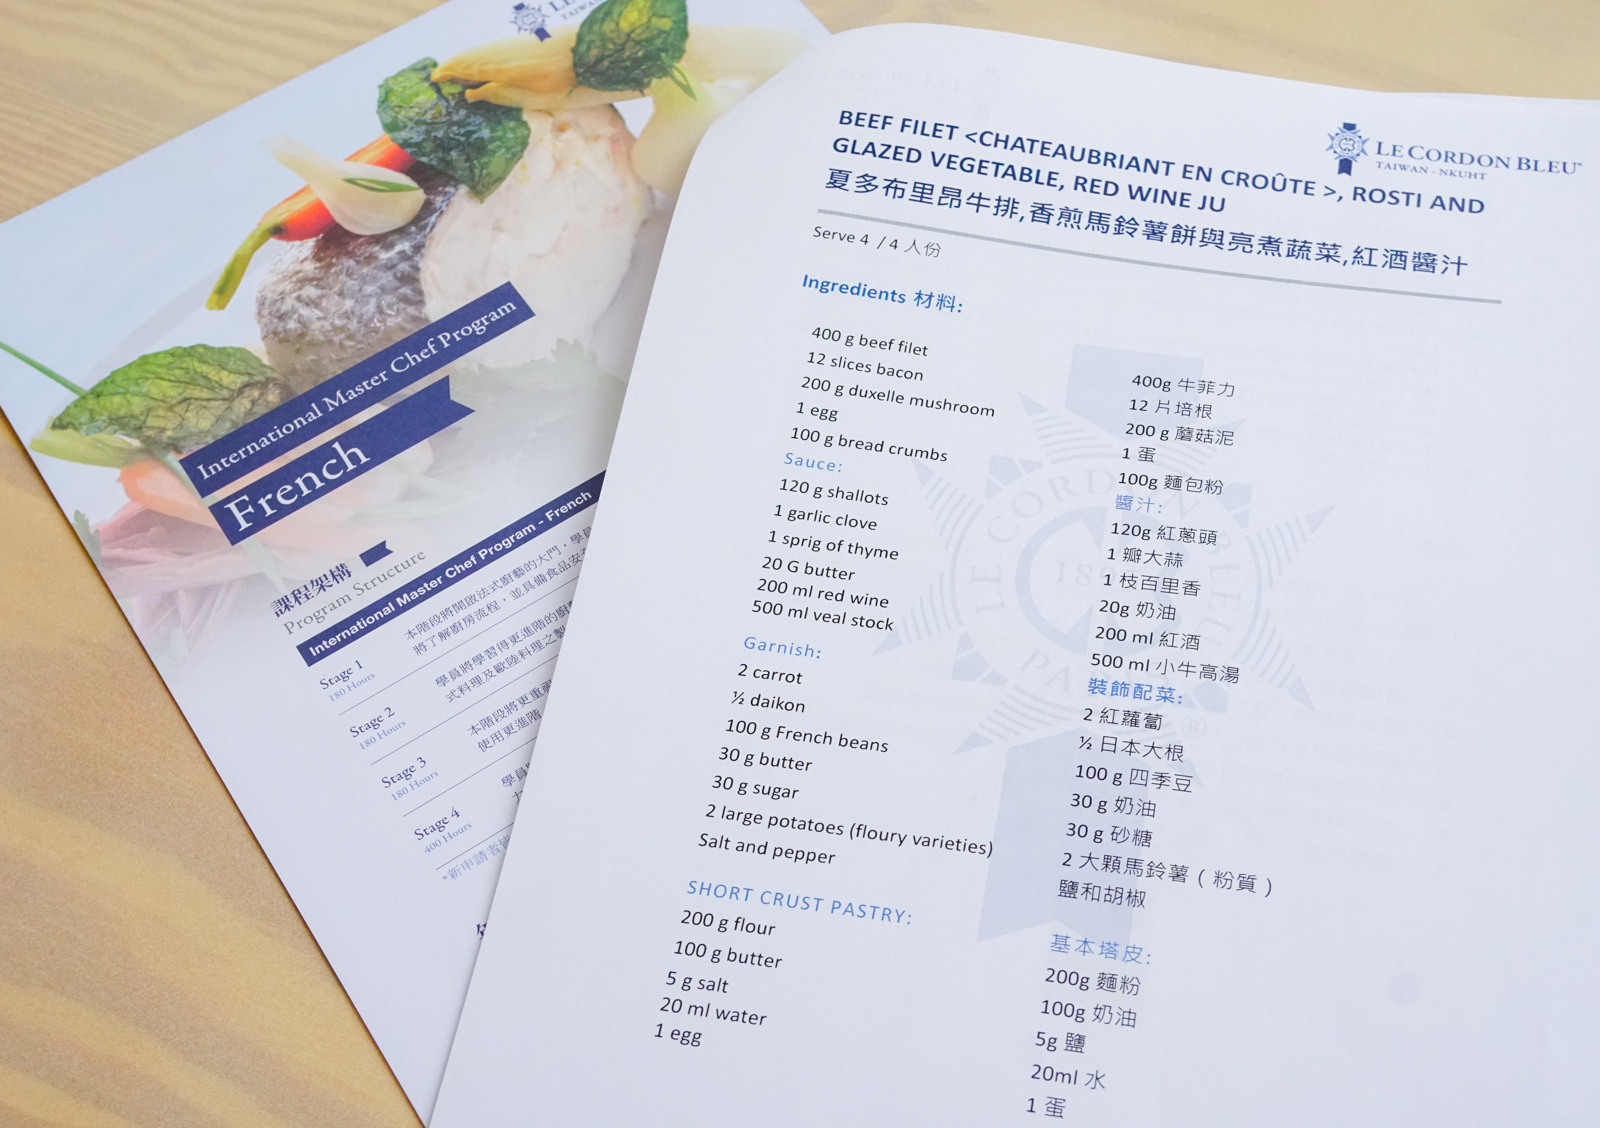 [高雄]Le Cordon Bleu Kaohsiung Campus 藍帶國際高雄校區-頂級西餐料理體驗課 專業外籍師資指導 高雄料理課程推薦 @美食好芃友